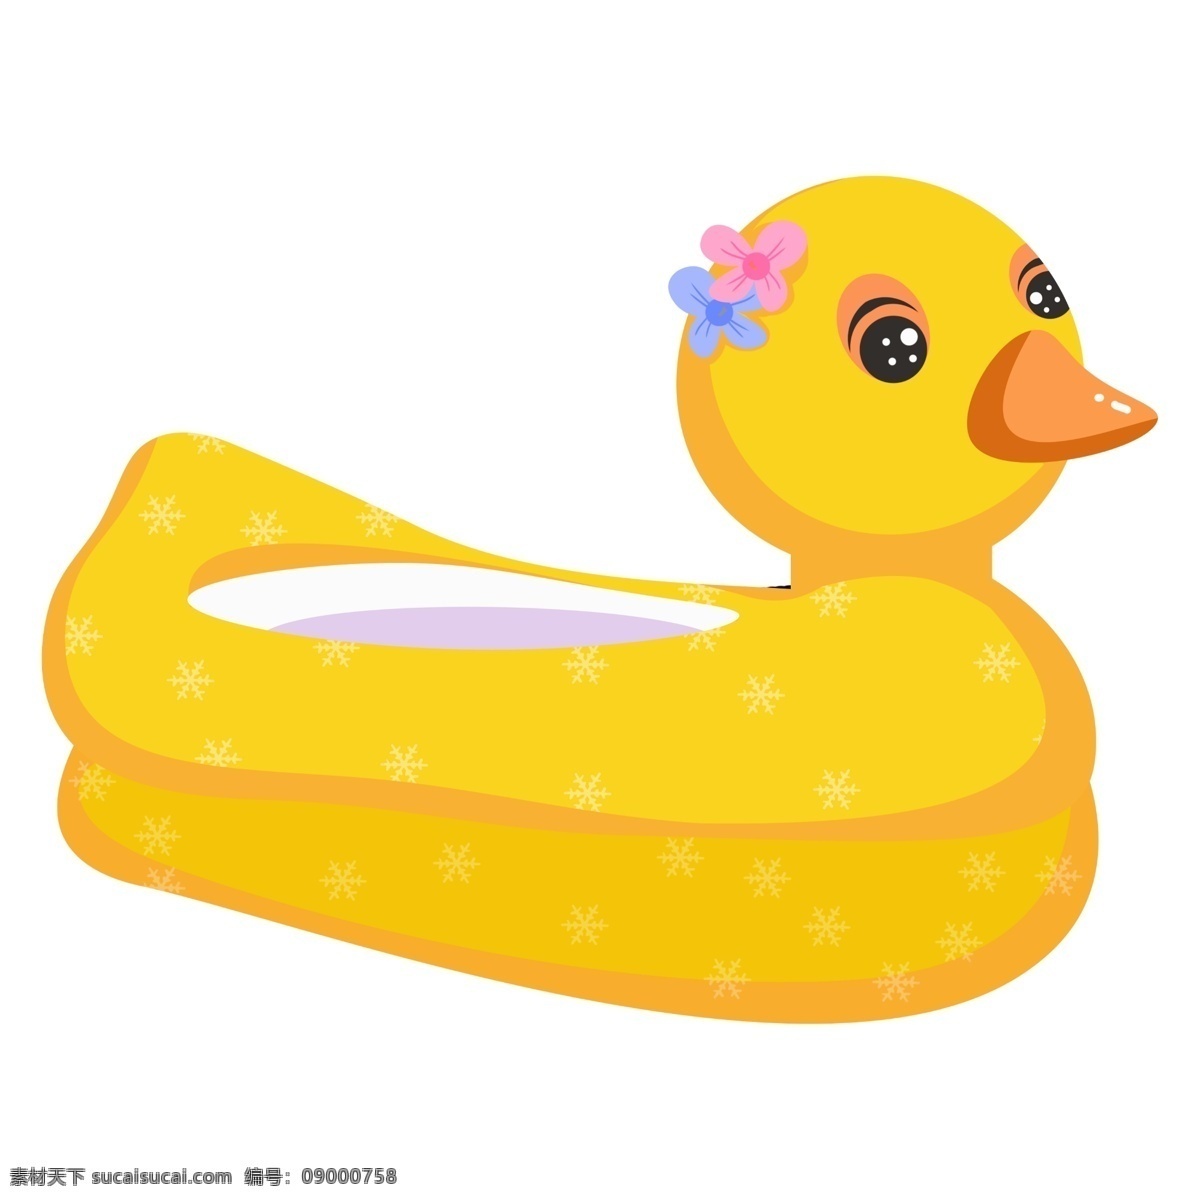 夏季 水上 玩具 小黄 鸭 小黄鸭 黄色 水上玩具